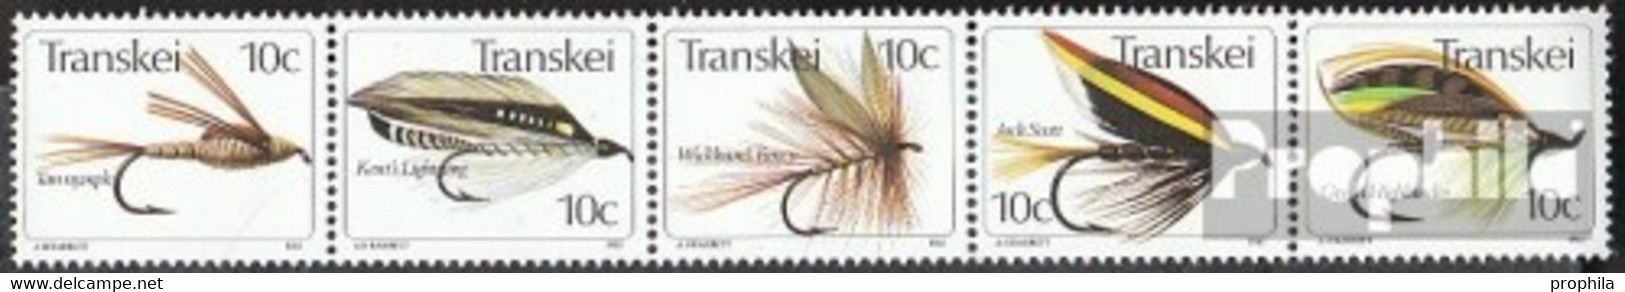 Südafrika - Transkei 83-87 Fünferstreifen (kompl.Ausg.) Postfrisch 1981 Angelhaken - Transkei